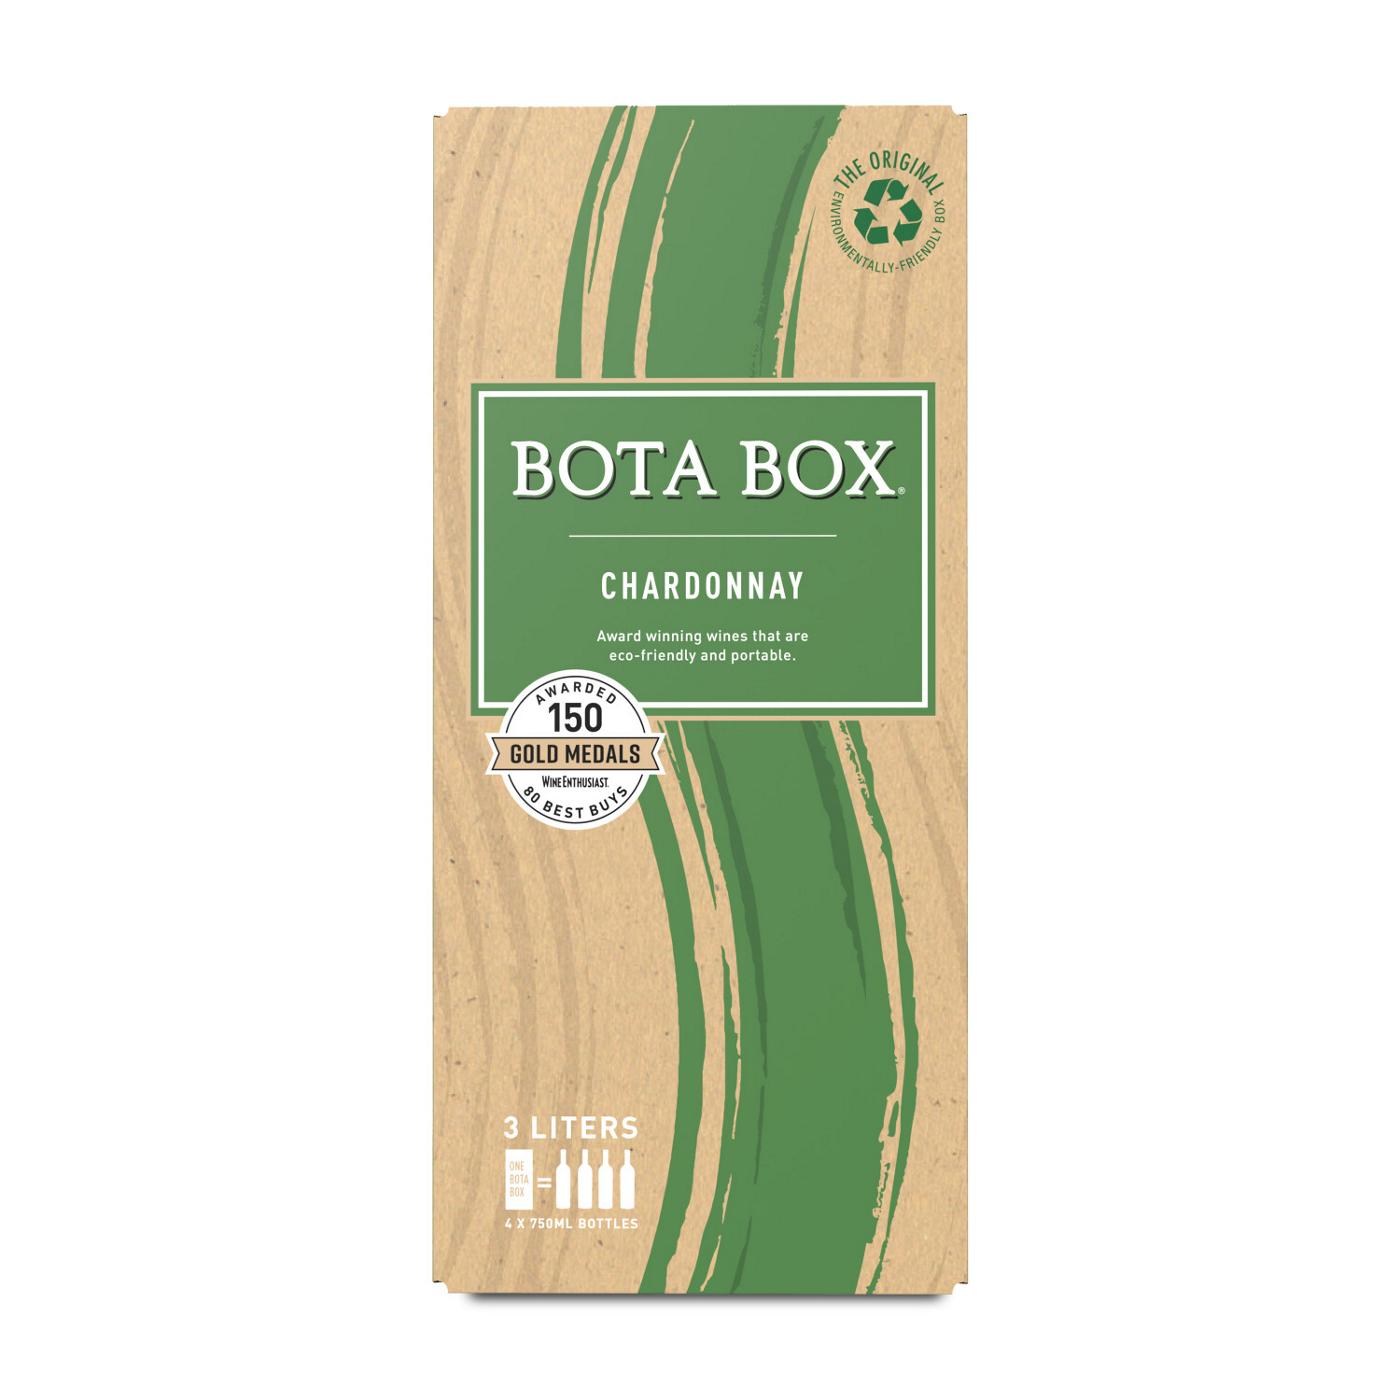 Bota Box Chardonnay Boxed Wine; image 1 of 2